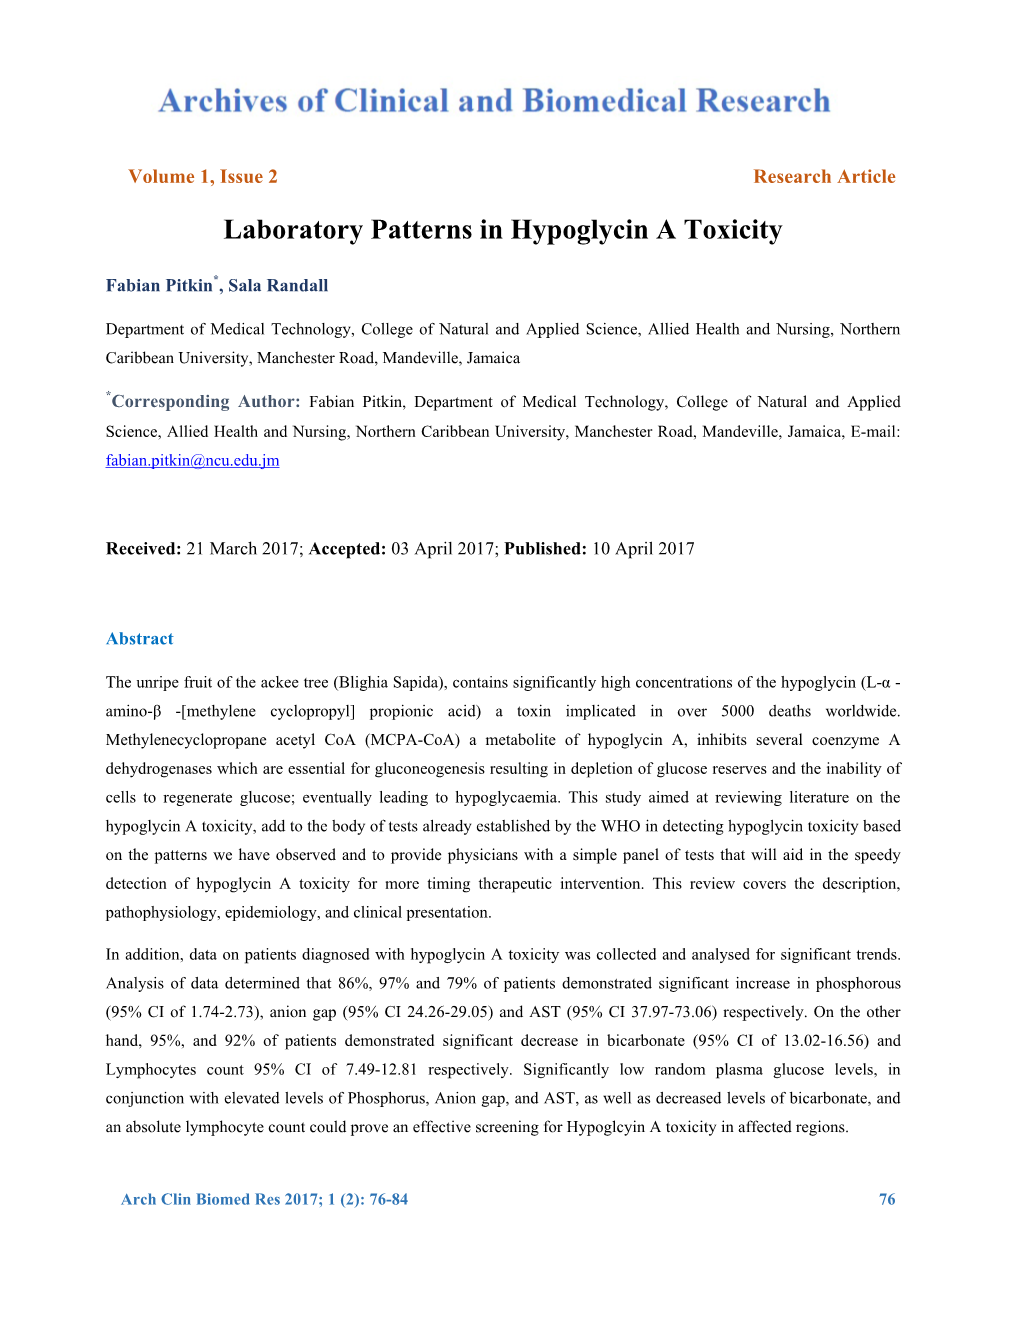 Laboratory Patterns in Hypoglycin a Toxicity